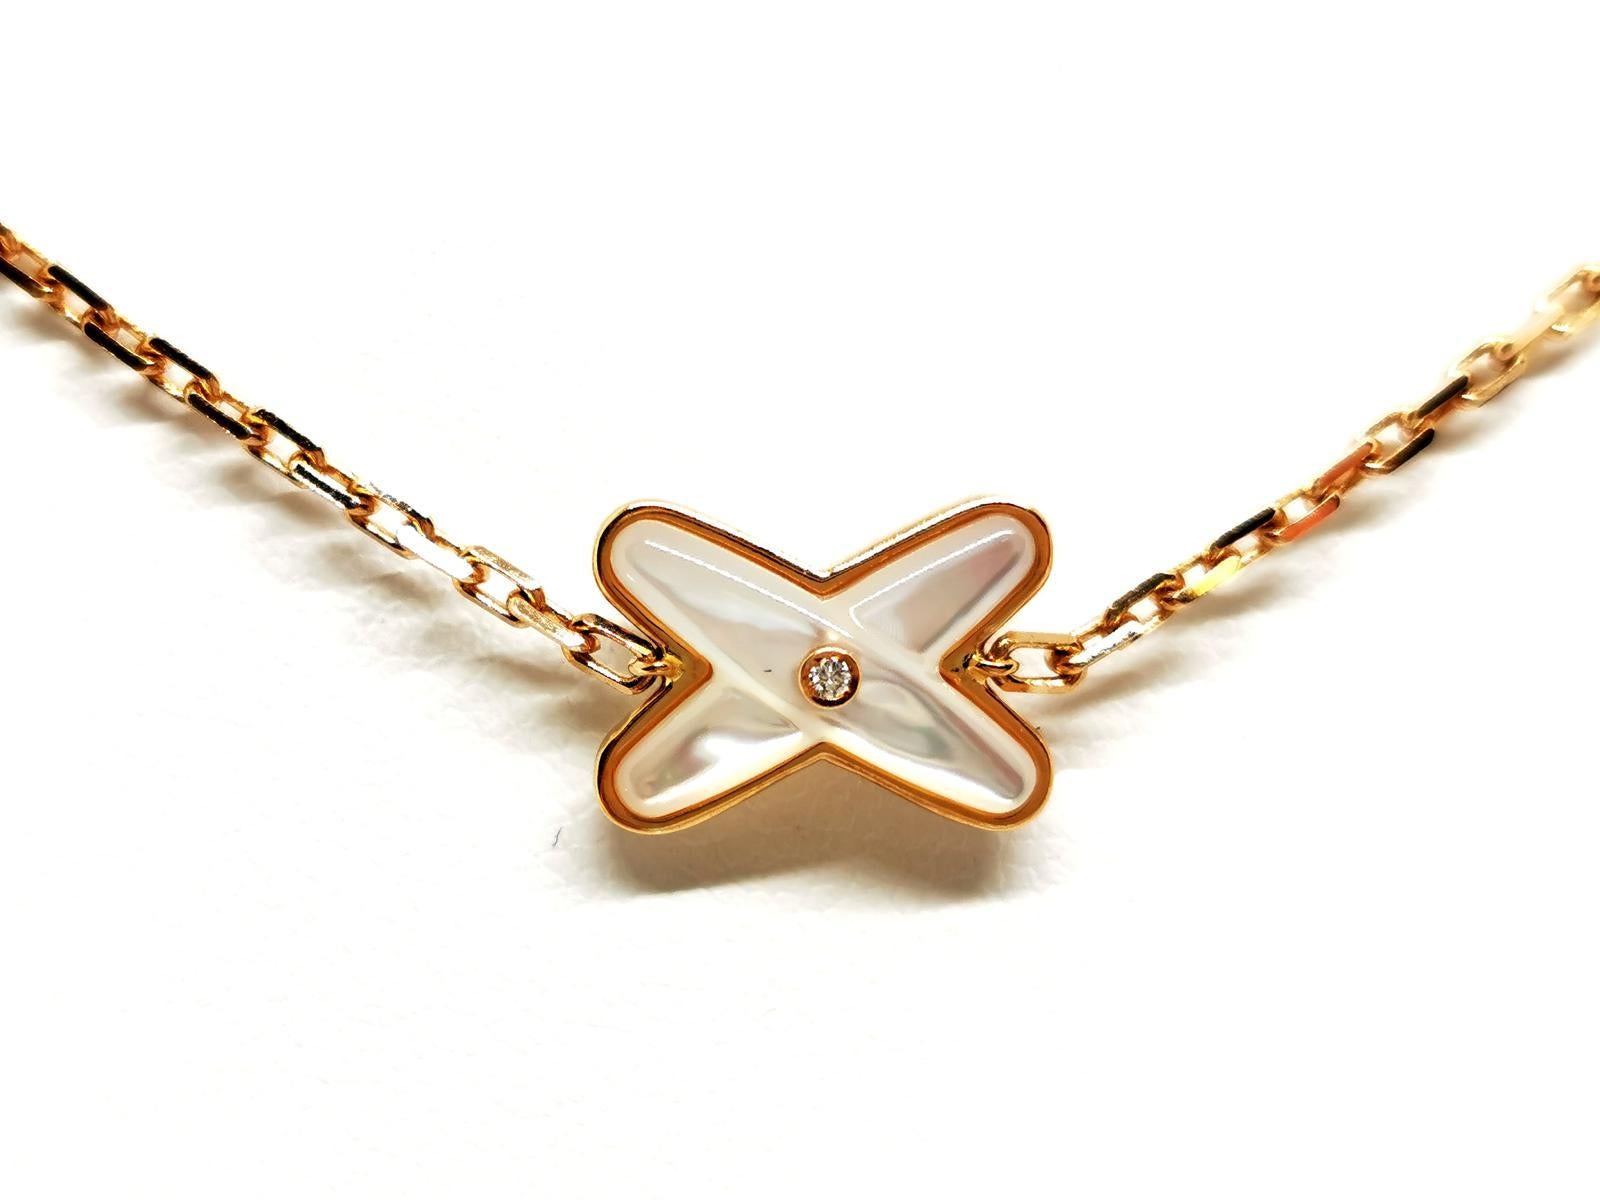 Brilliant Cut Chaumet Chain Necklace Jeux De Liens Rose Golddiamond For Sale